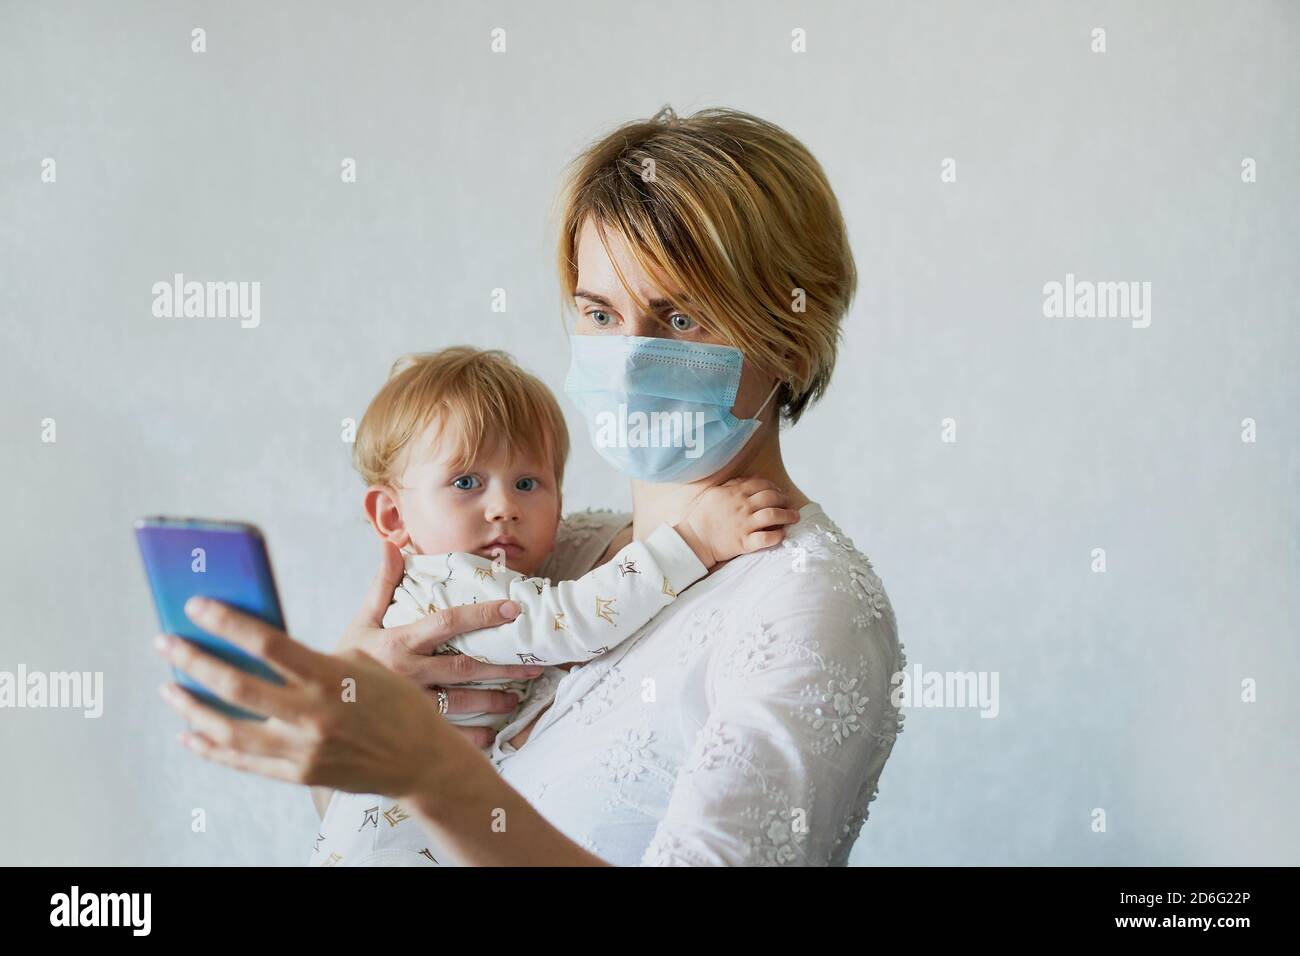 Матерей препятствуют общению. Мама в медицинской маске с ребенком. Мама маска. Мама с ребенком в маске мед. Маска мамы для детей.